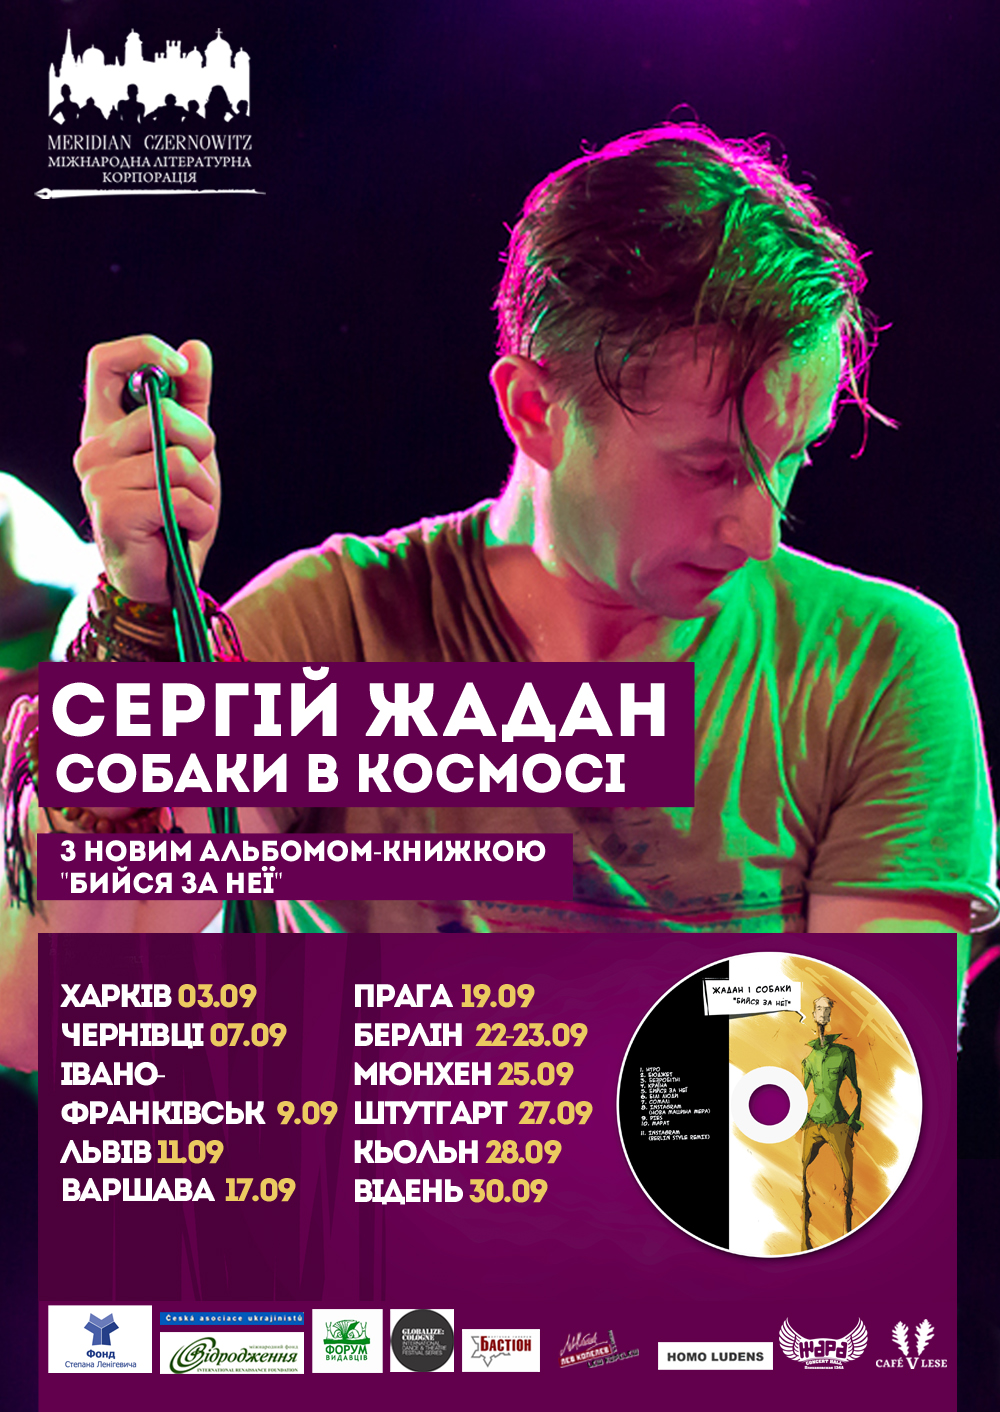 Сергій Жадан і «Собаки в космосі» презентують у Чернівцях новий альбом-книжку «Бийся за неї»